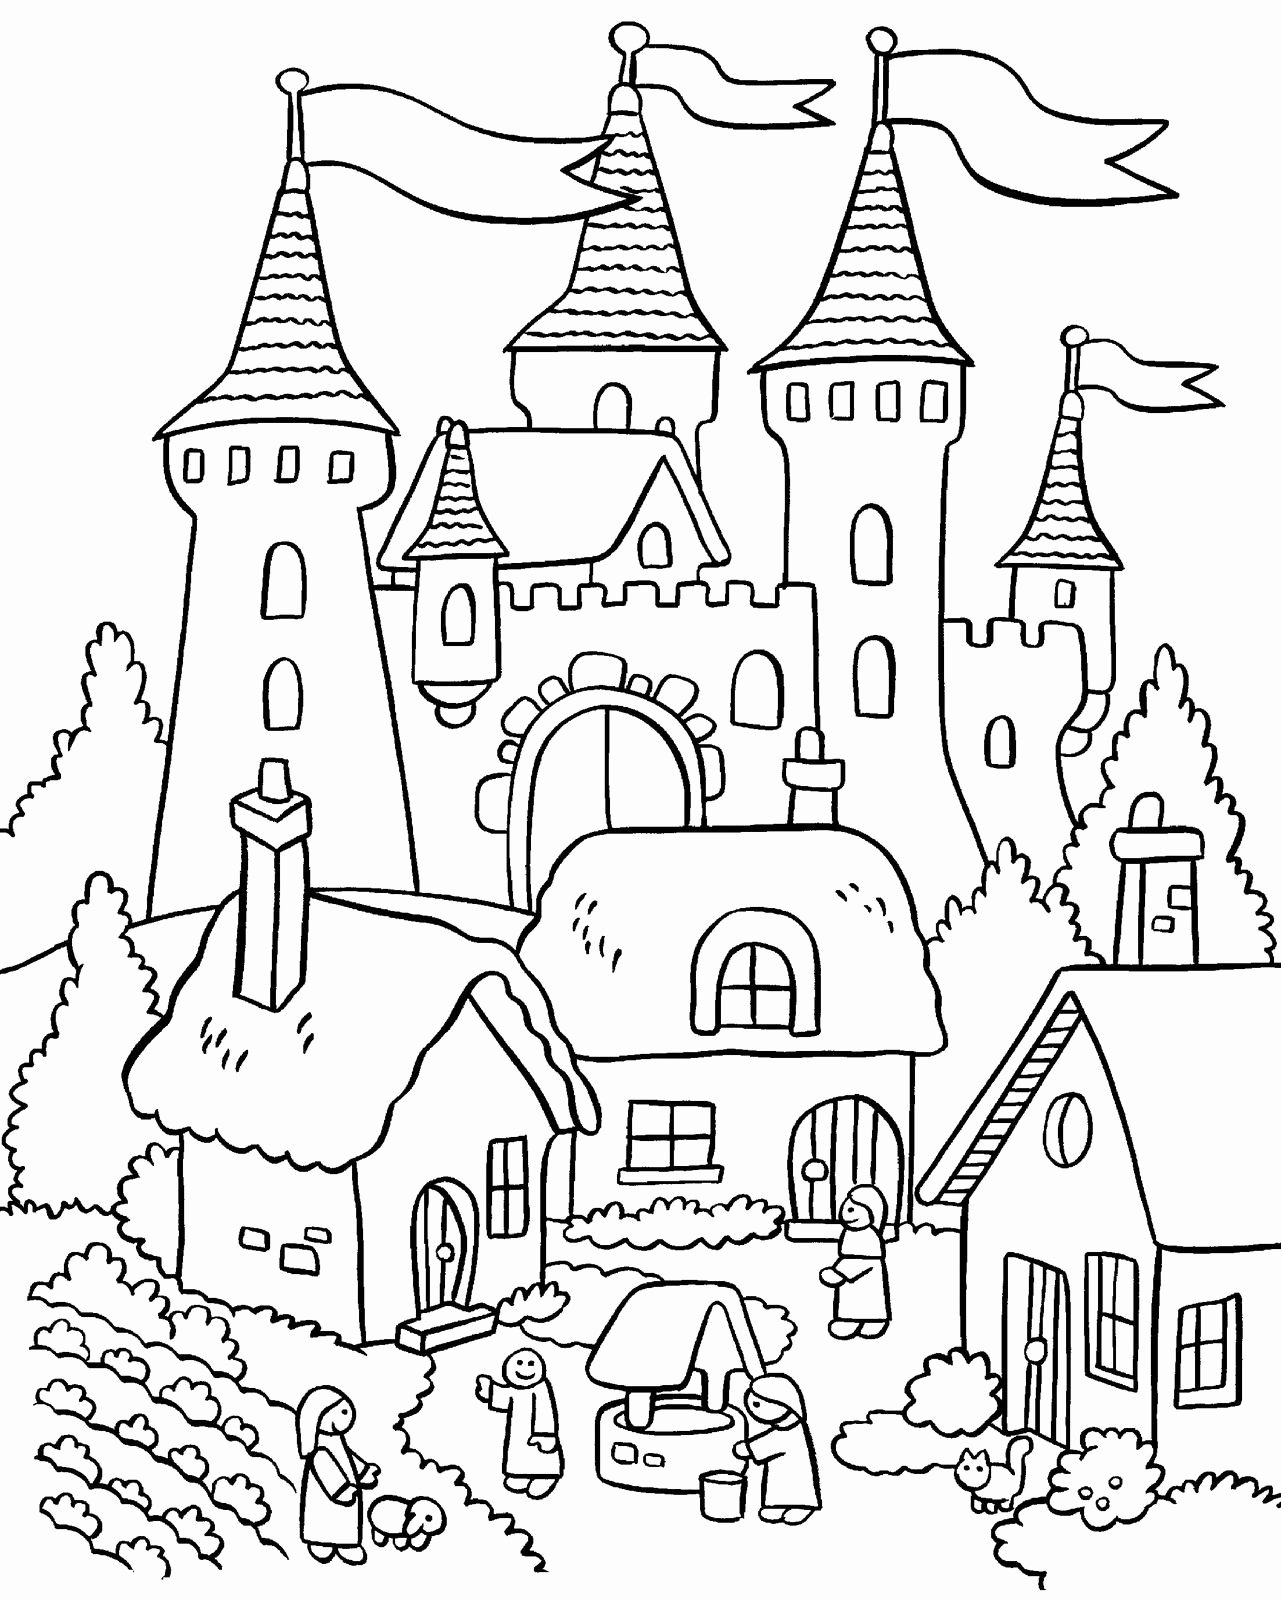 Trang màu lâu đài và vùng nông thôn